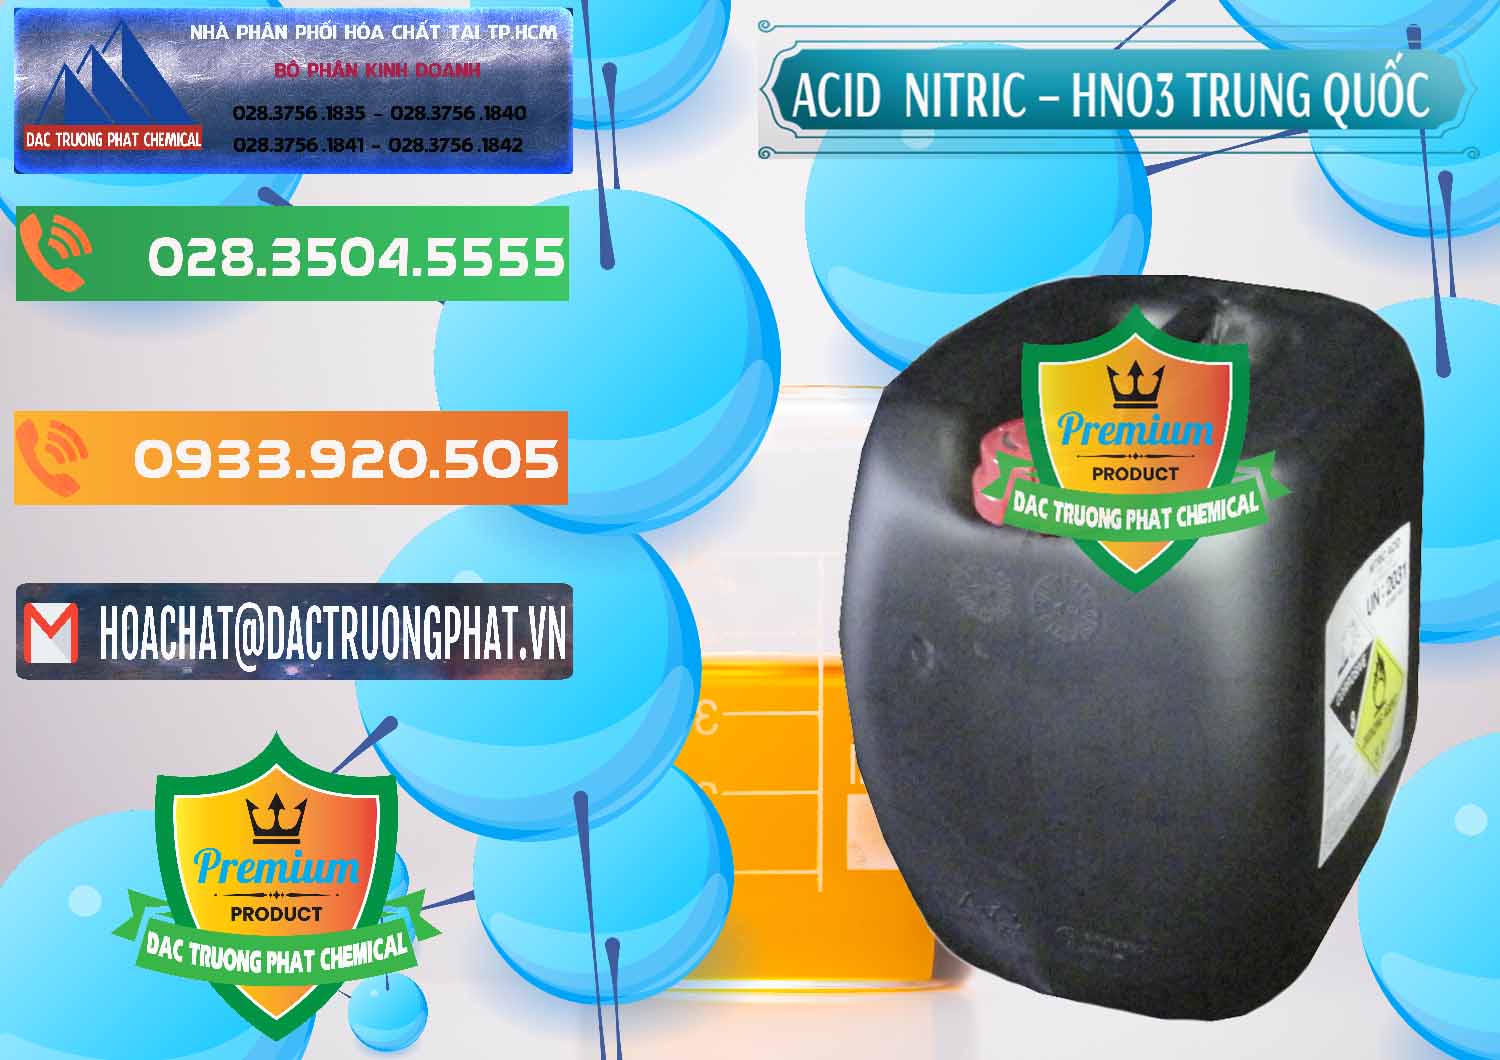 Bán & cung ứng Acid Nitric – Axit Nitric HNO3 68% Trung Quốc China - 0343 - Chuyên kinh doanh - cung cấp hóa chất tại TP.HCM - hoachatxulynuoc.com.vn